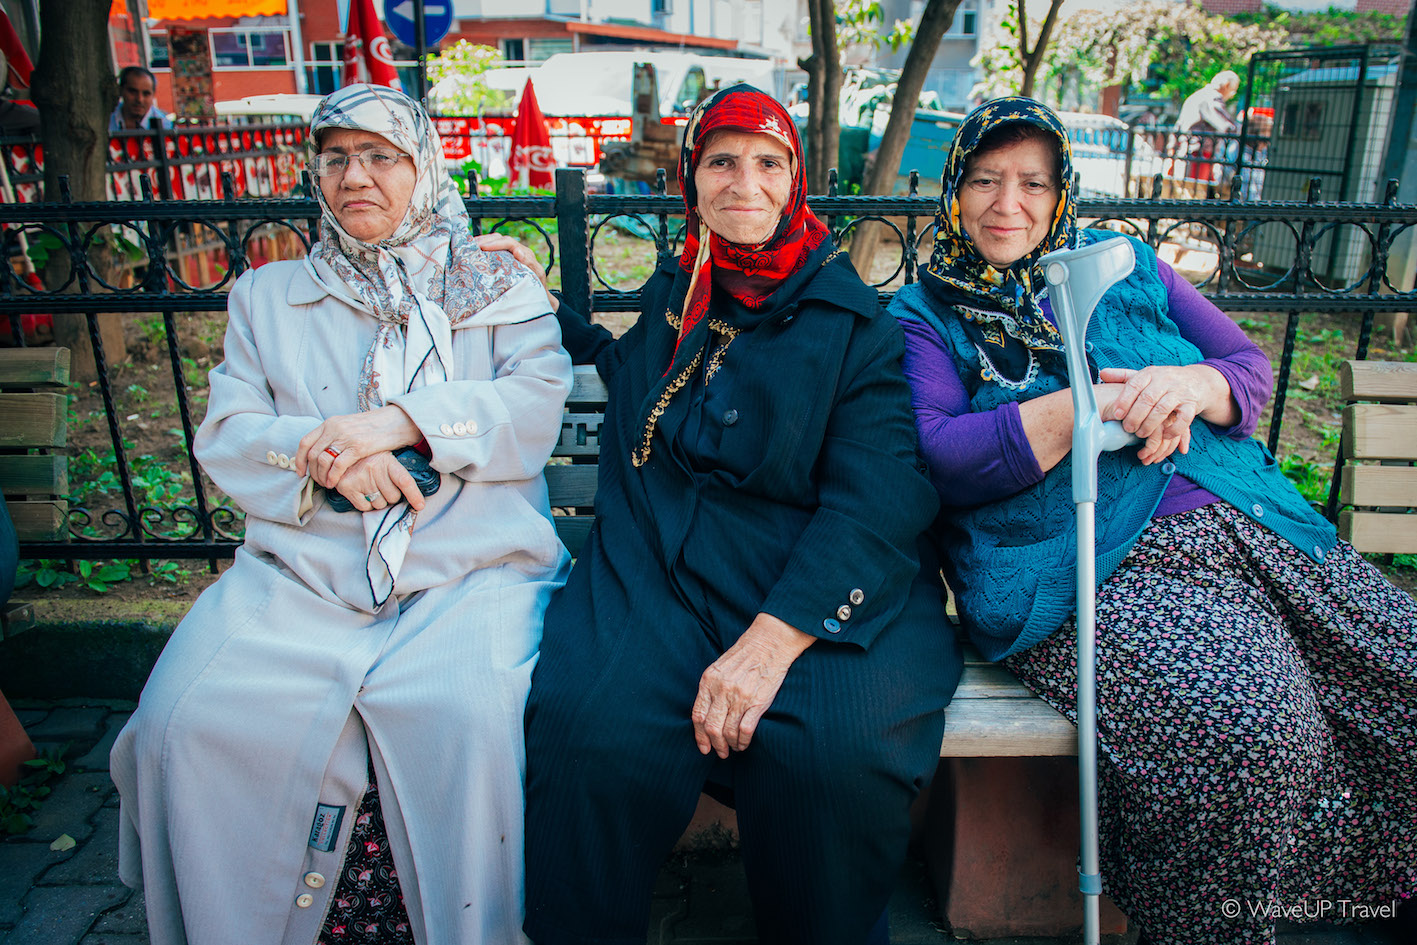 Turkish elders